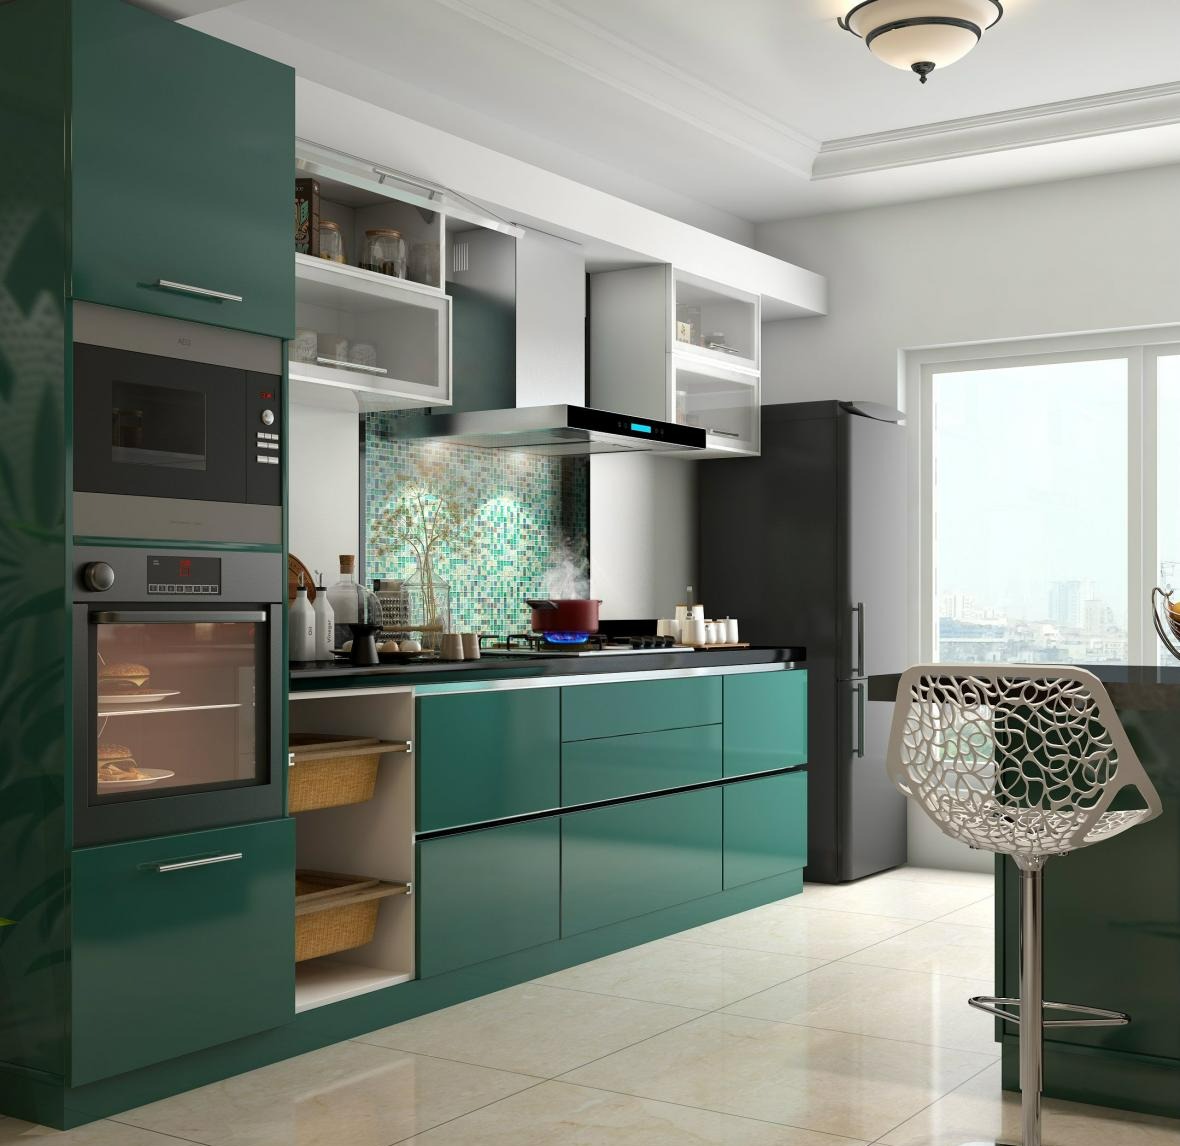 آشپزخانه سبز گلاسه - نوسازی آشپزخانه کم هزینه